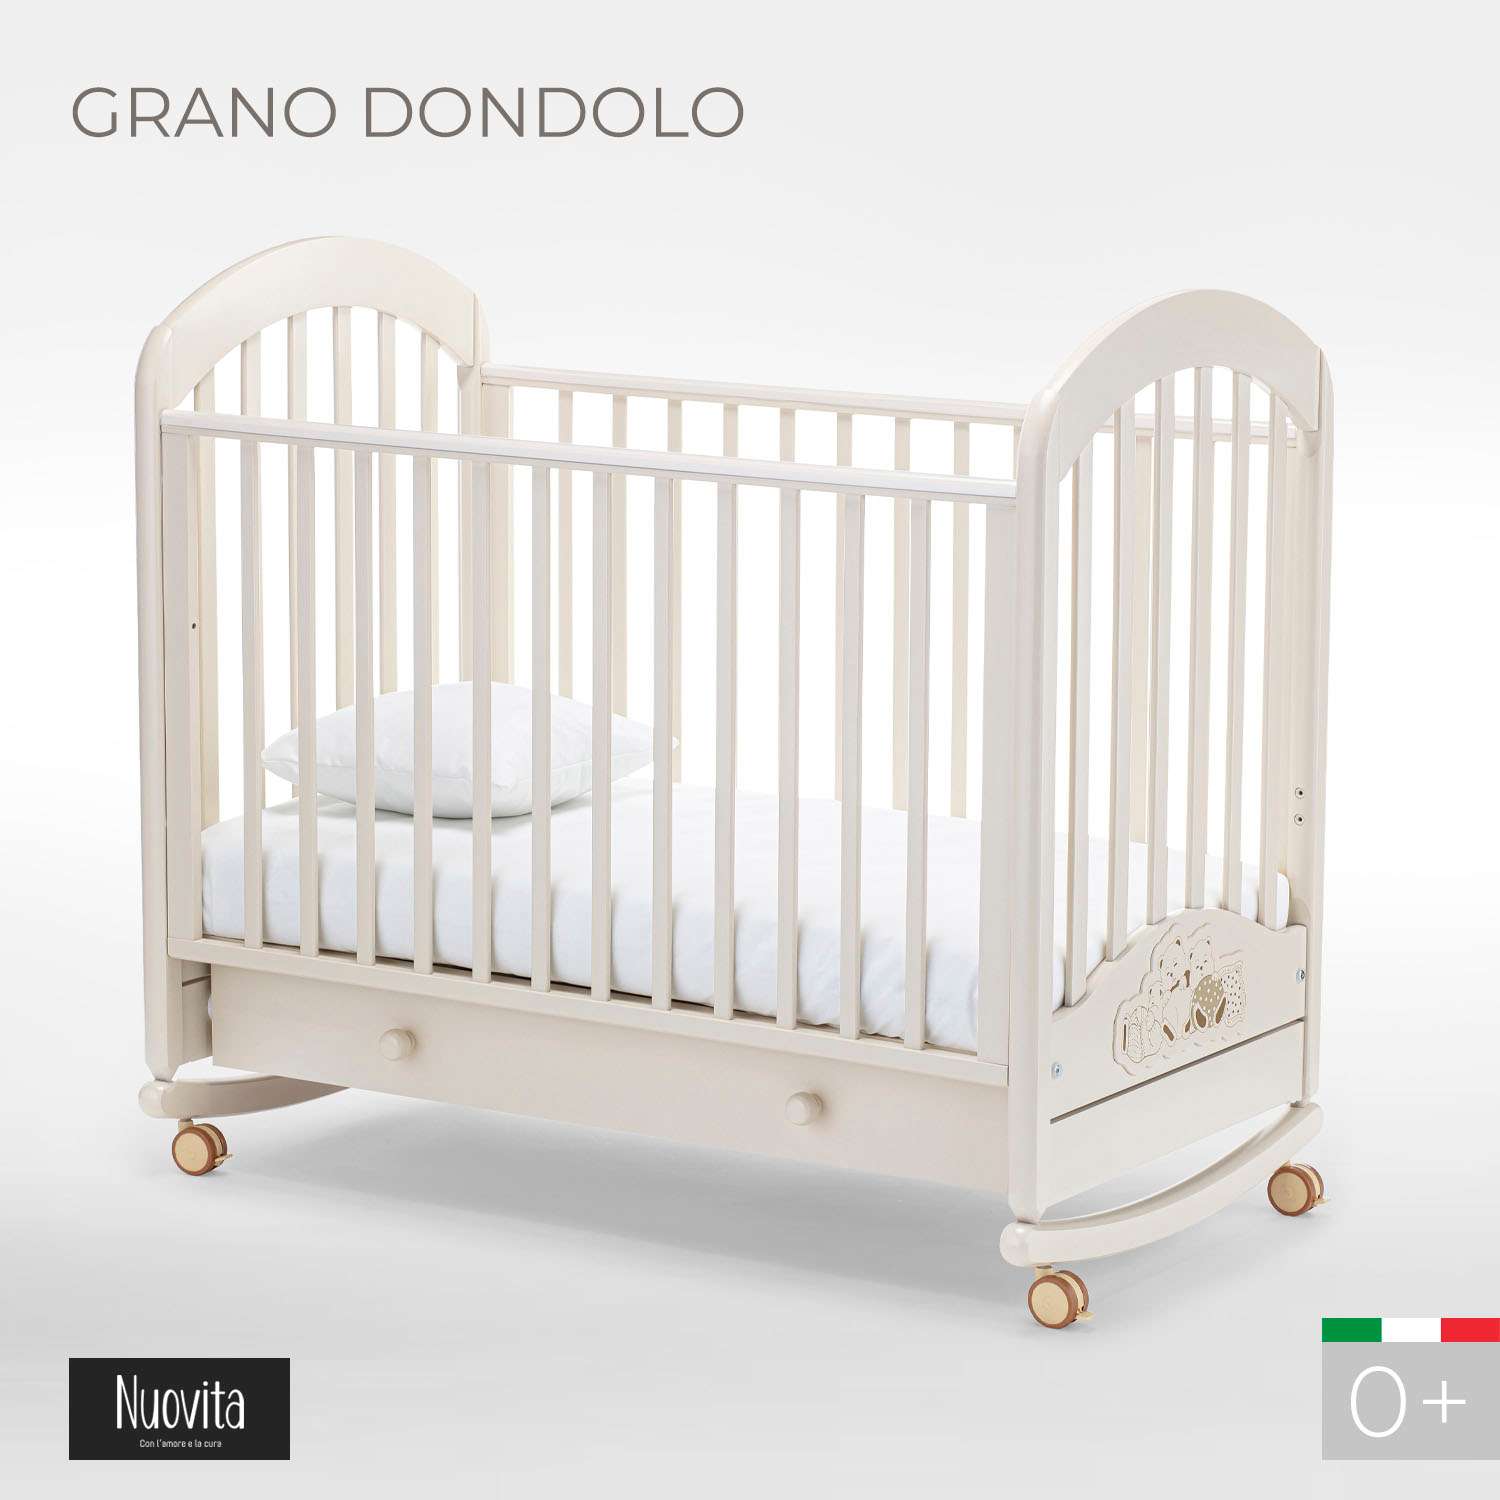 Детская кроватка Nuovita Grano Dondolo прямоугольная, без маятника (слоновая кость) - фото 2